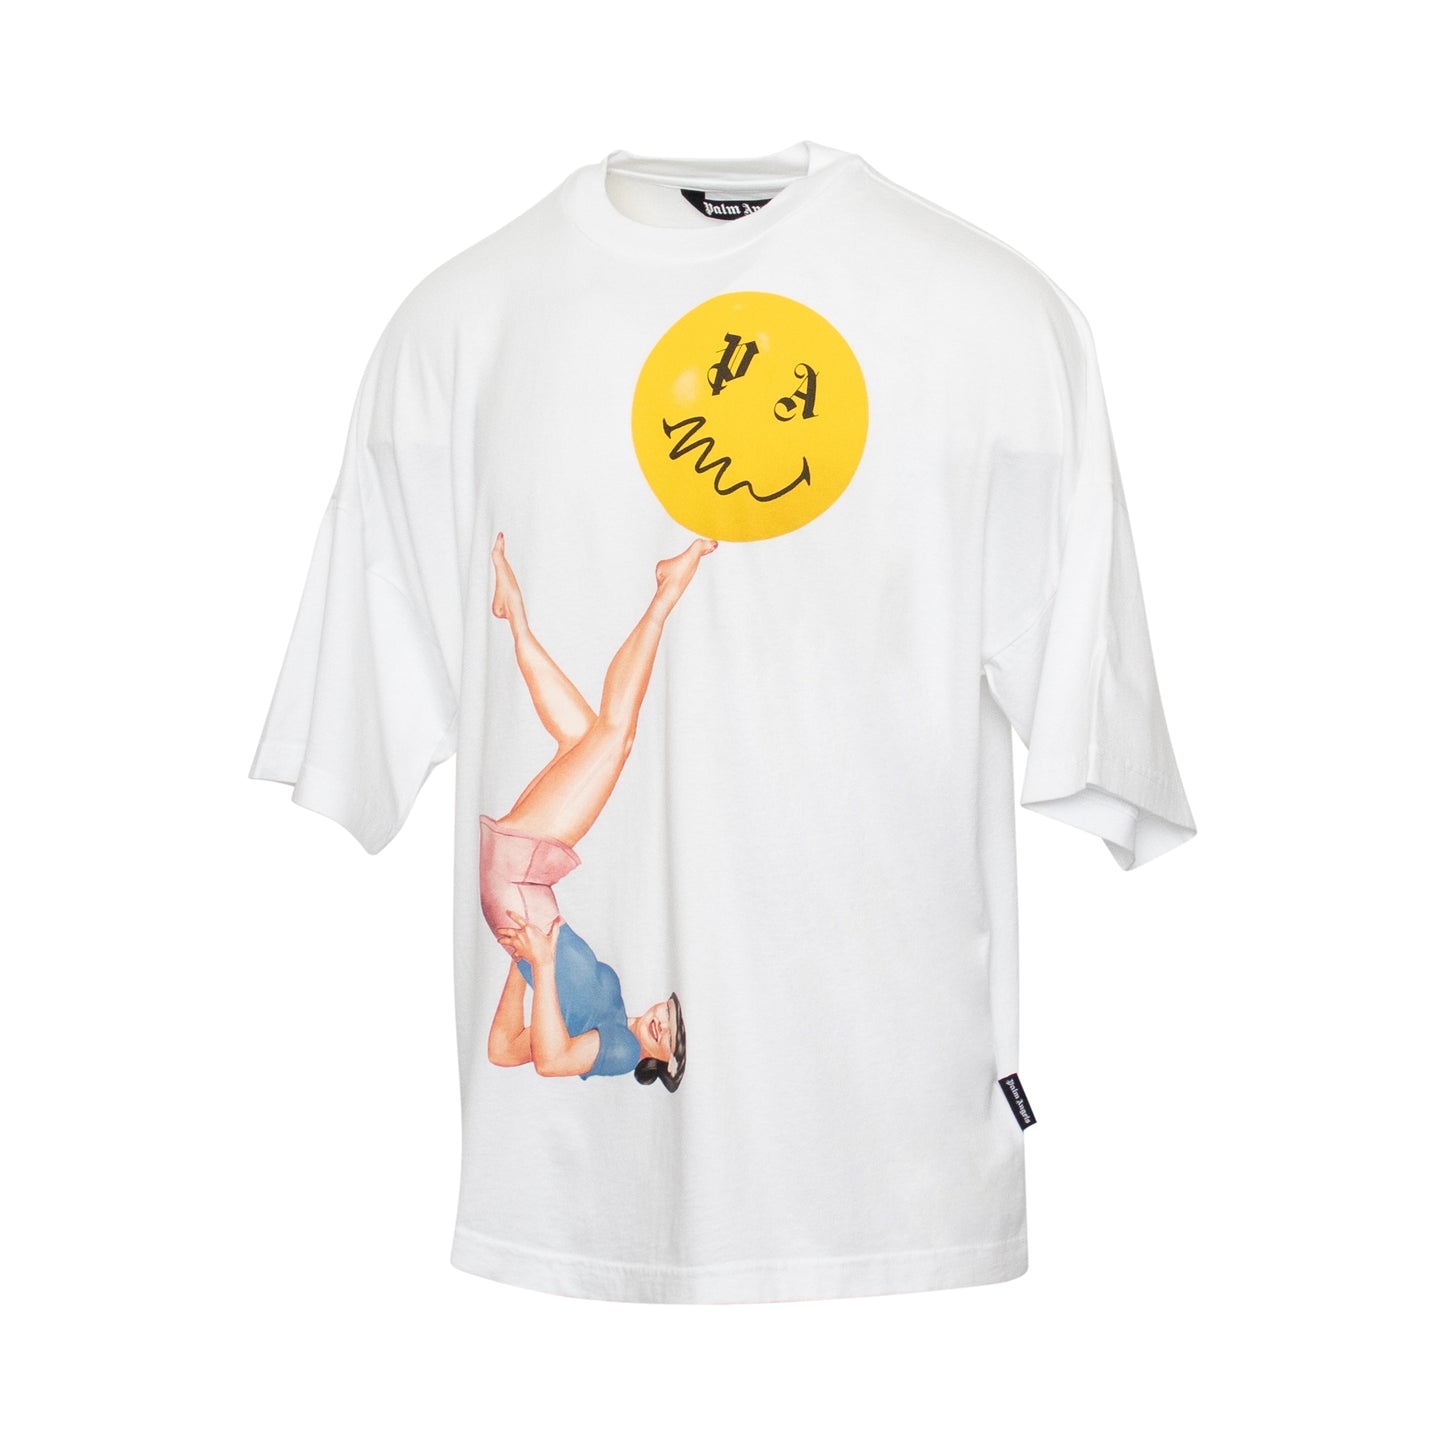 Juggler Pin Up Loose T-Shirt in White